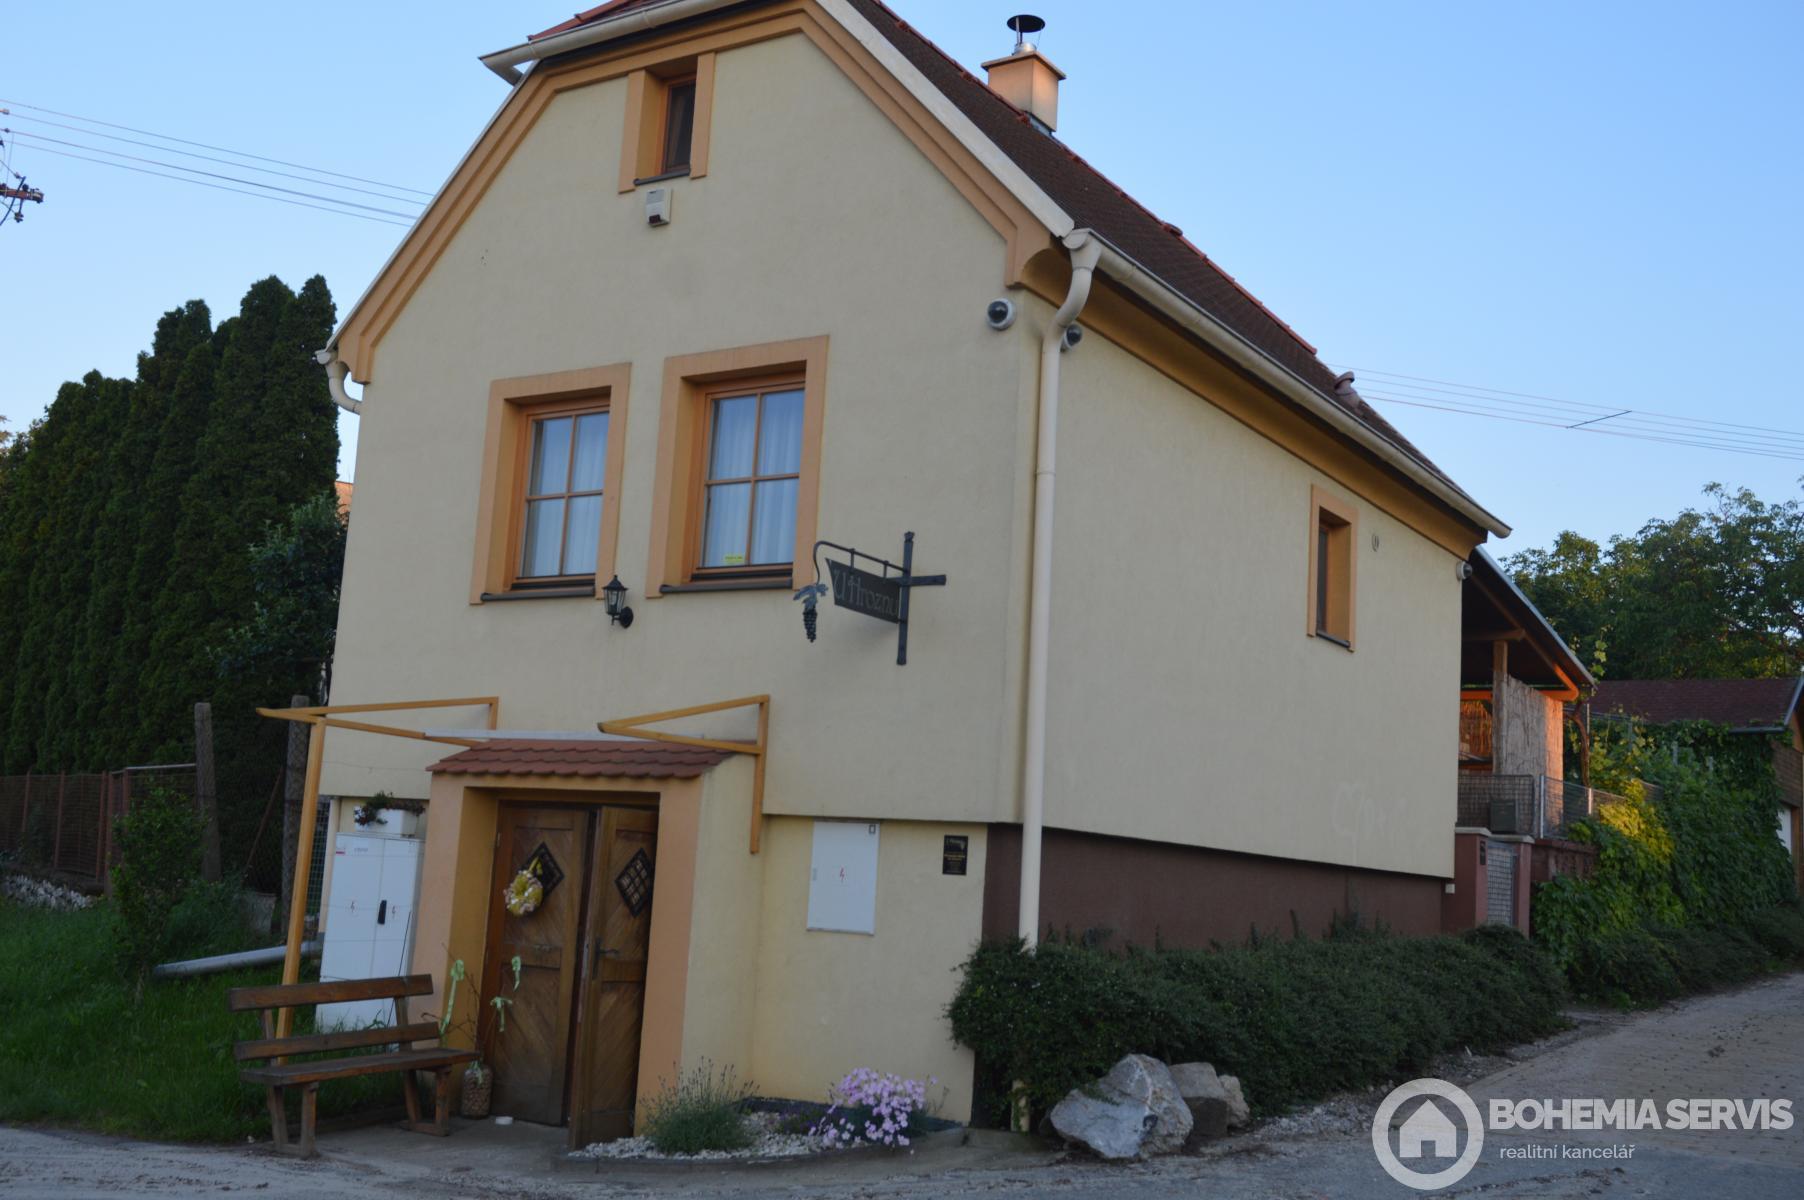 Rodinný dům 95 m2 s vinným sklípkem, pozemek 160 m2, Dlážděná ulice Valtice